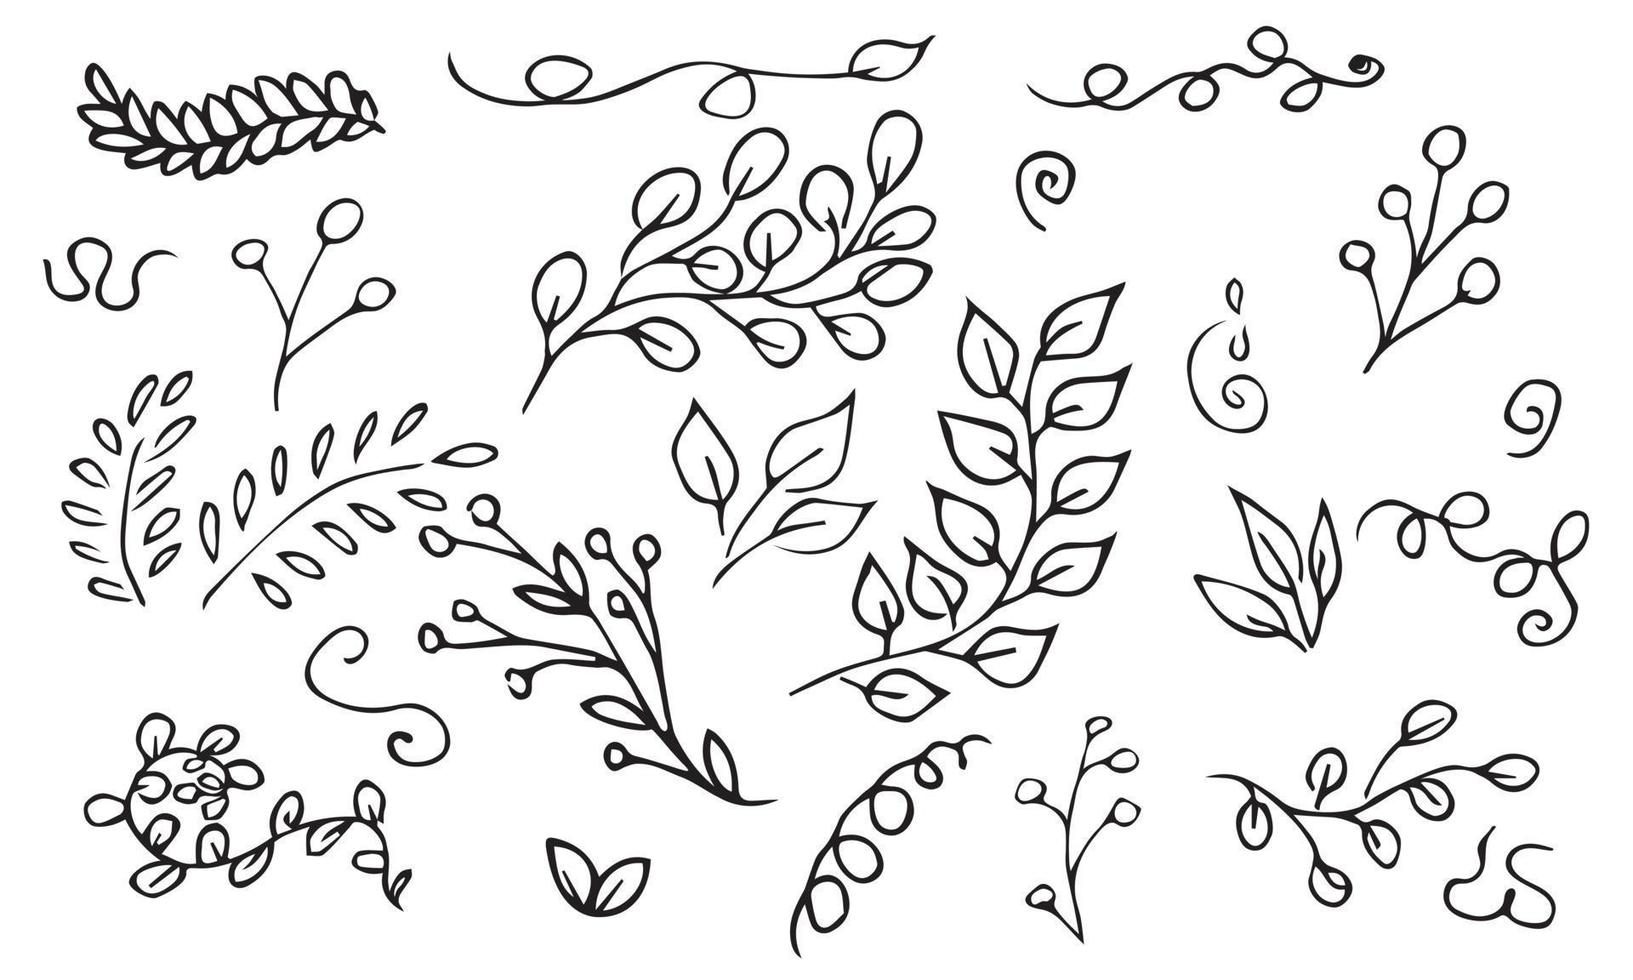 insieme di vettore disegnato a mano di rami di albero ed erbe aromatiche. scarabocchi neri isolati su sfondo bianco. illustrazione botanica per stampa, web, design, arredamento, logo.